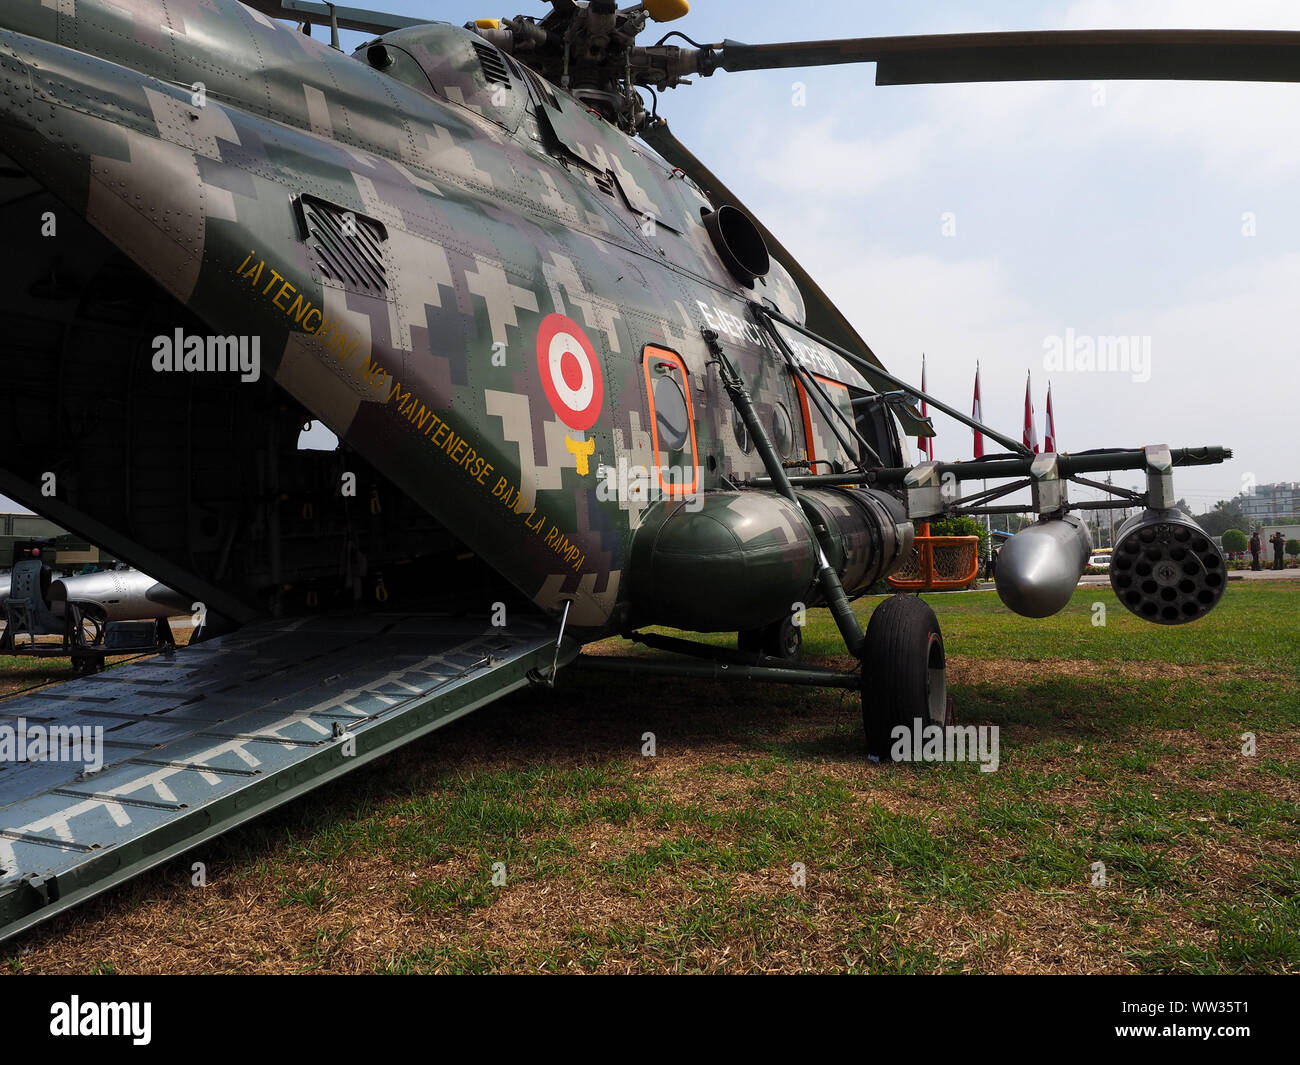 El Mil Mi-171Sh-P helicóptero armado del Ejército peruano aparece en la séptima edición de la Feria Internacional de Tecnología de Defensa, SITDEF, 2019, en el Cuartel General del Ejército peruano. El evento se celebrará del 16 al 19 de mayo con la presencia de representantes de 28 países. Foto de stock